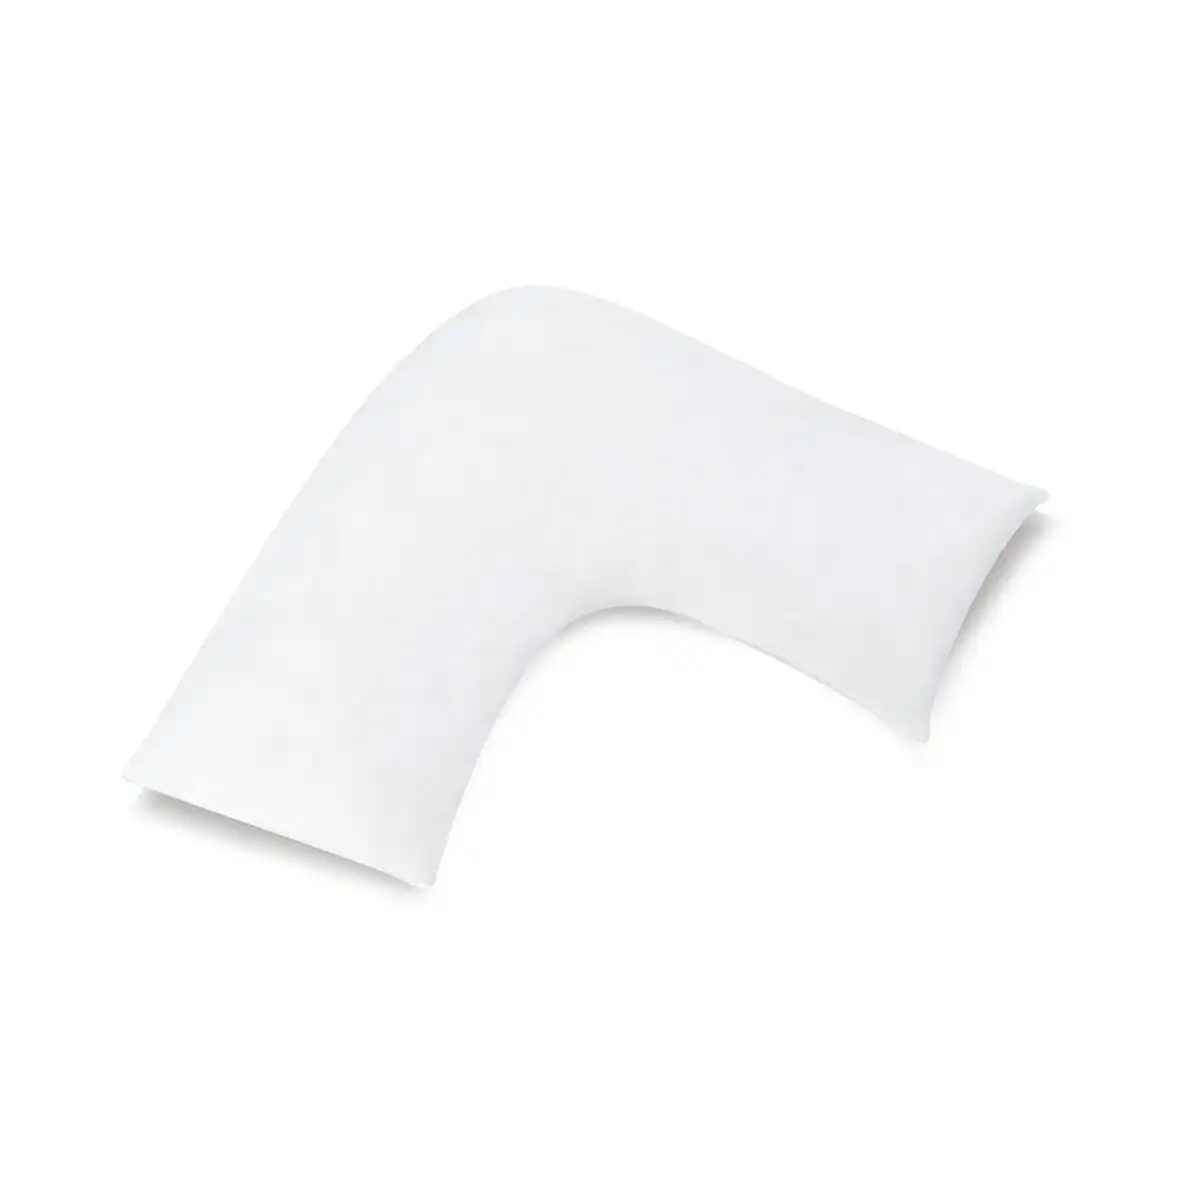 400 Thread Count White U-shaped Pillowcase